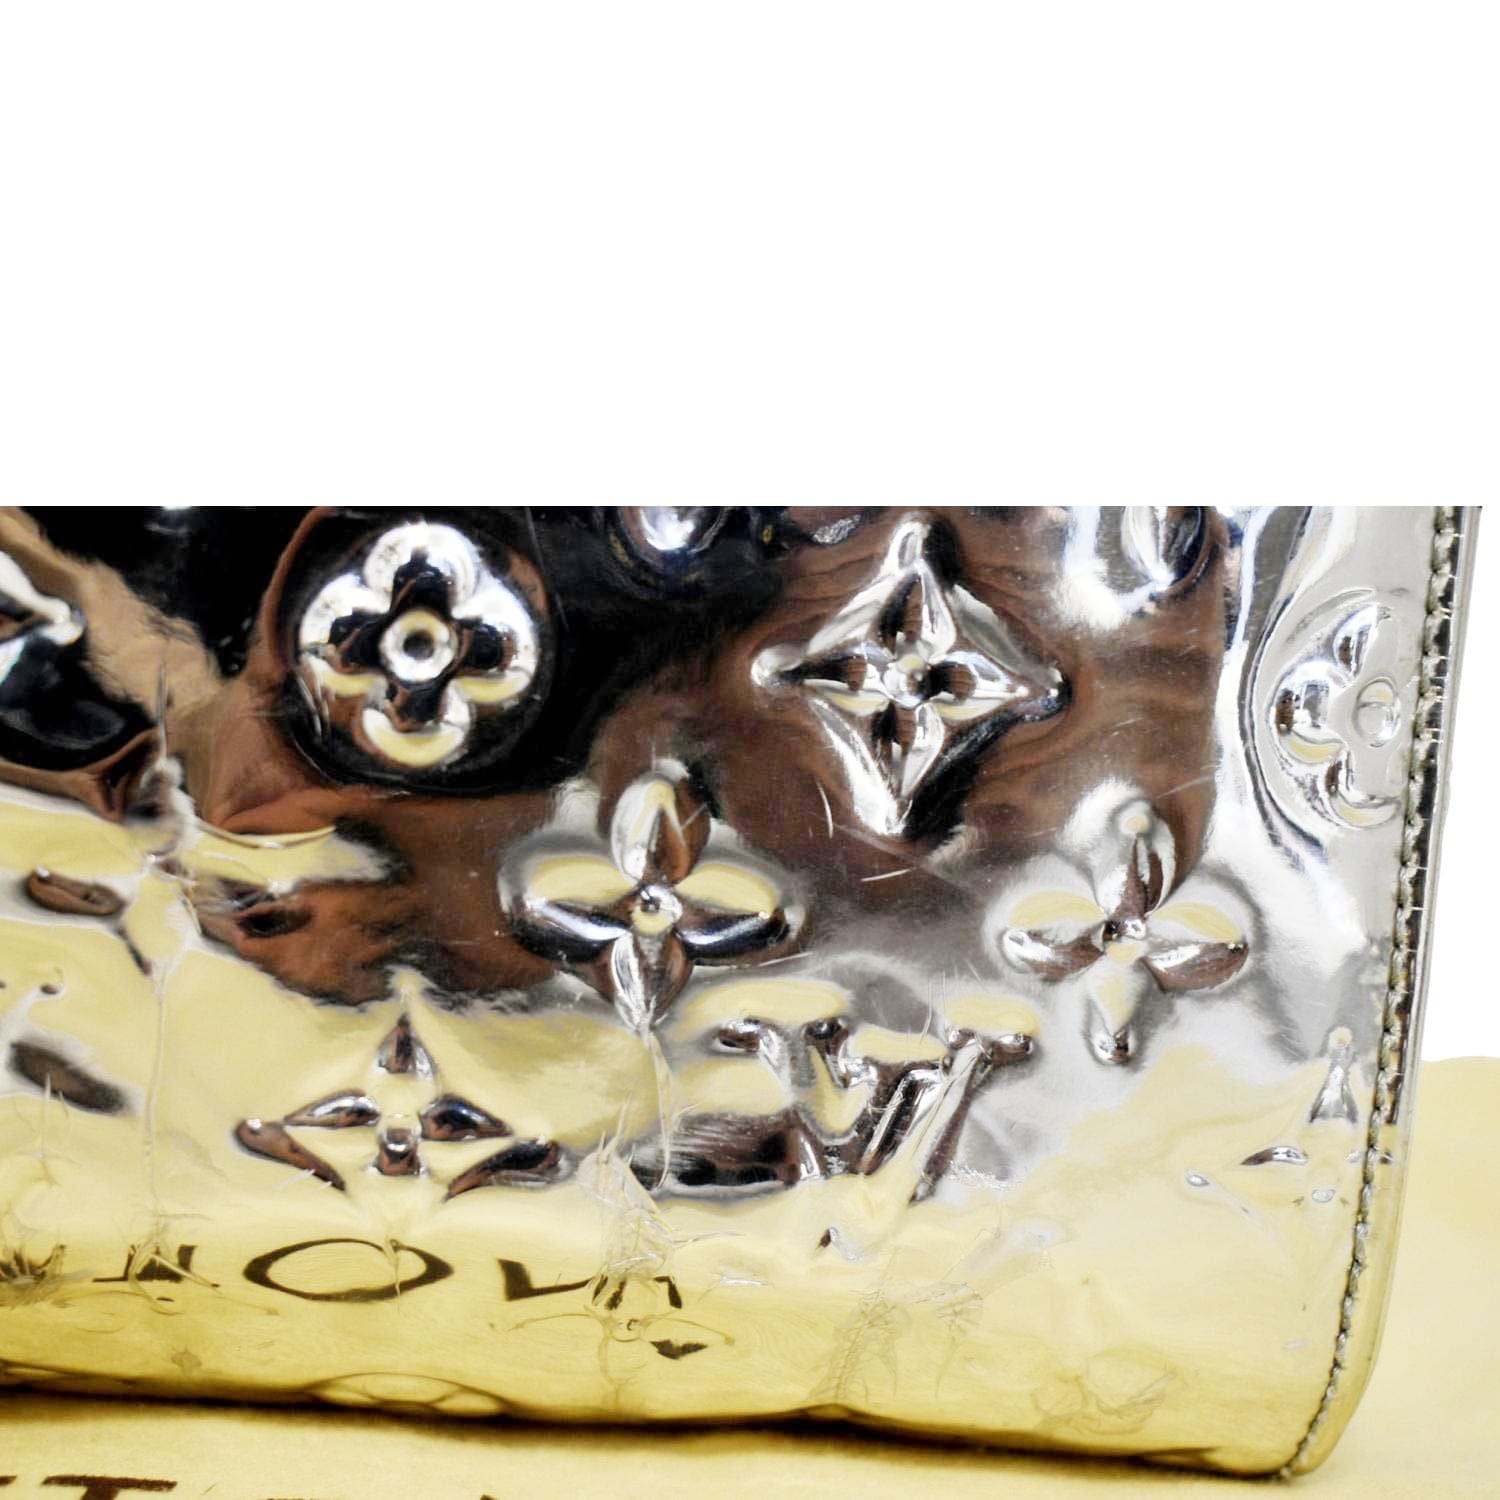 Louis Vuitton Silver Miroir Speedy Bag